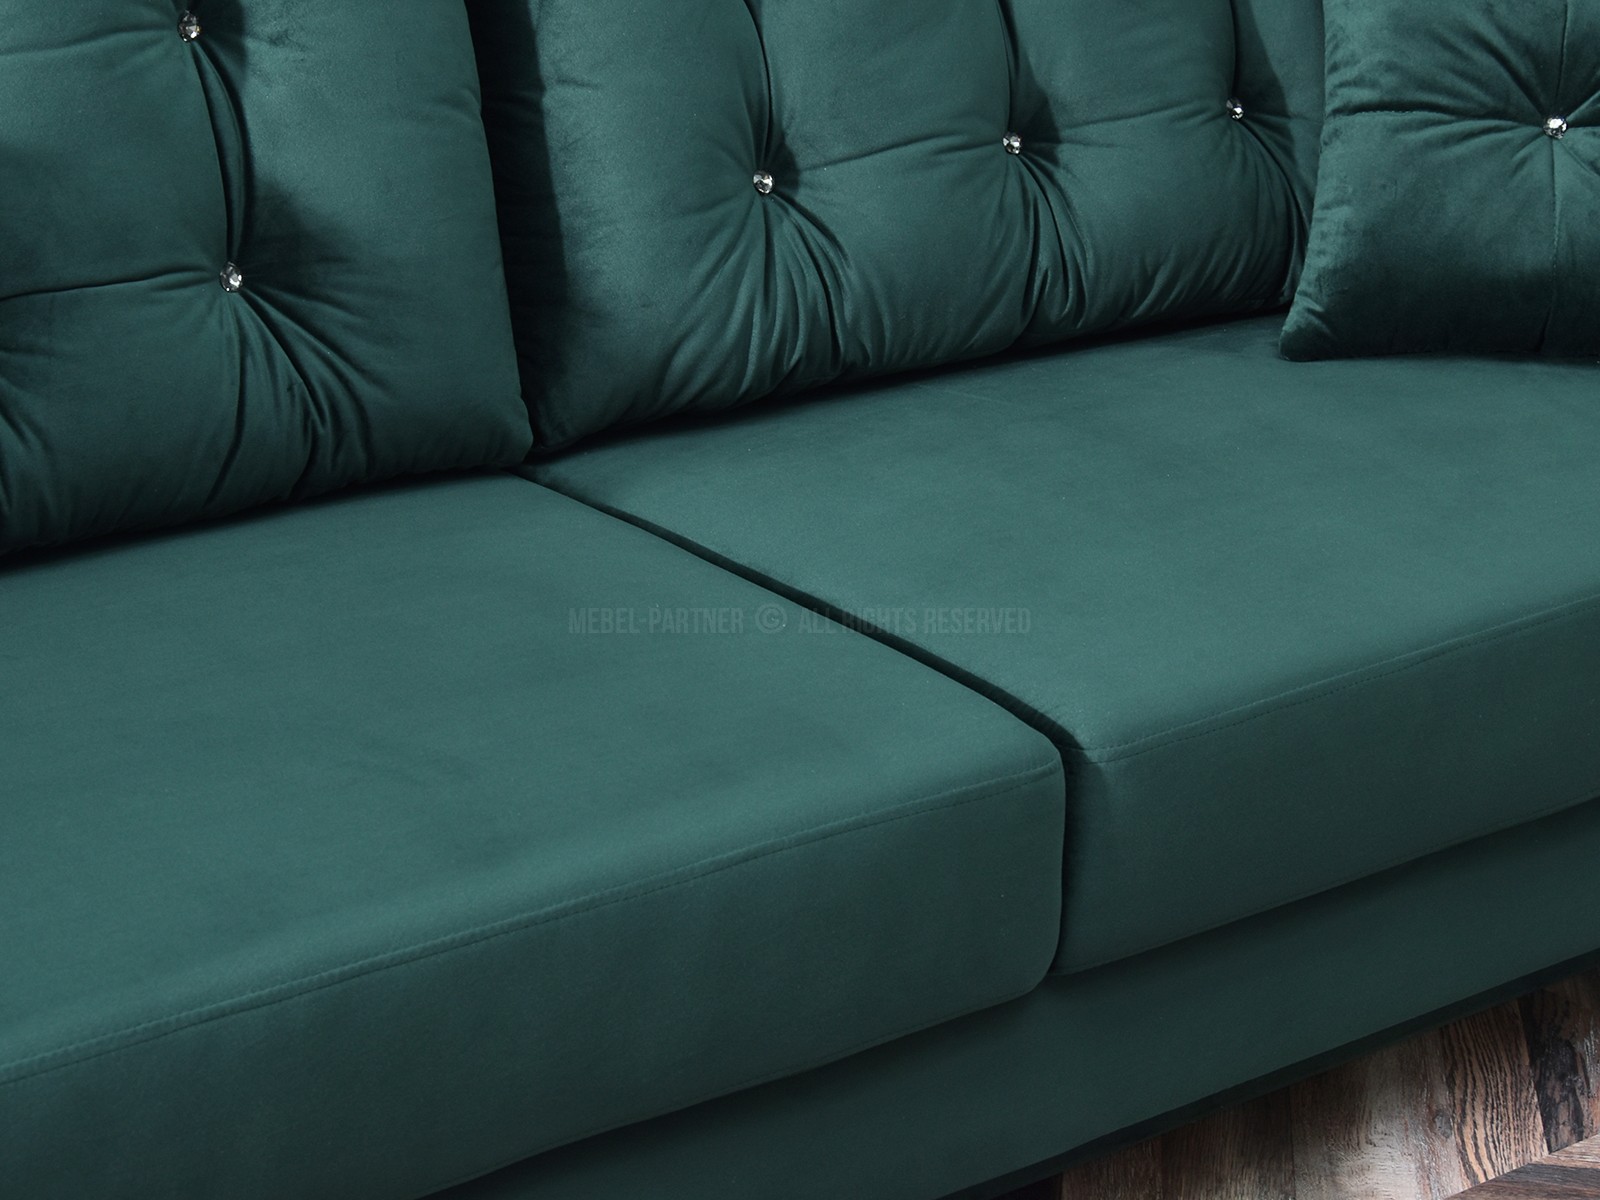 Sofa welurowa glamour LANTI ZIELONA pikowana z poduszkami - finezyjne boczki